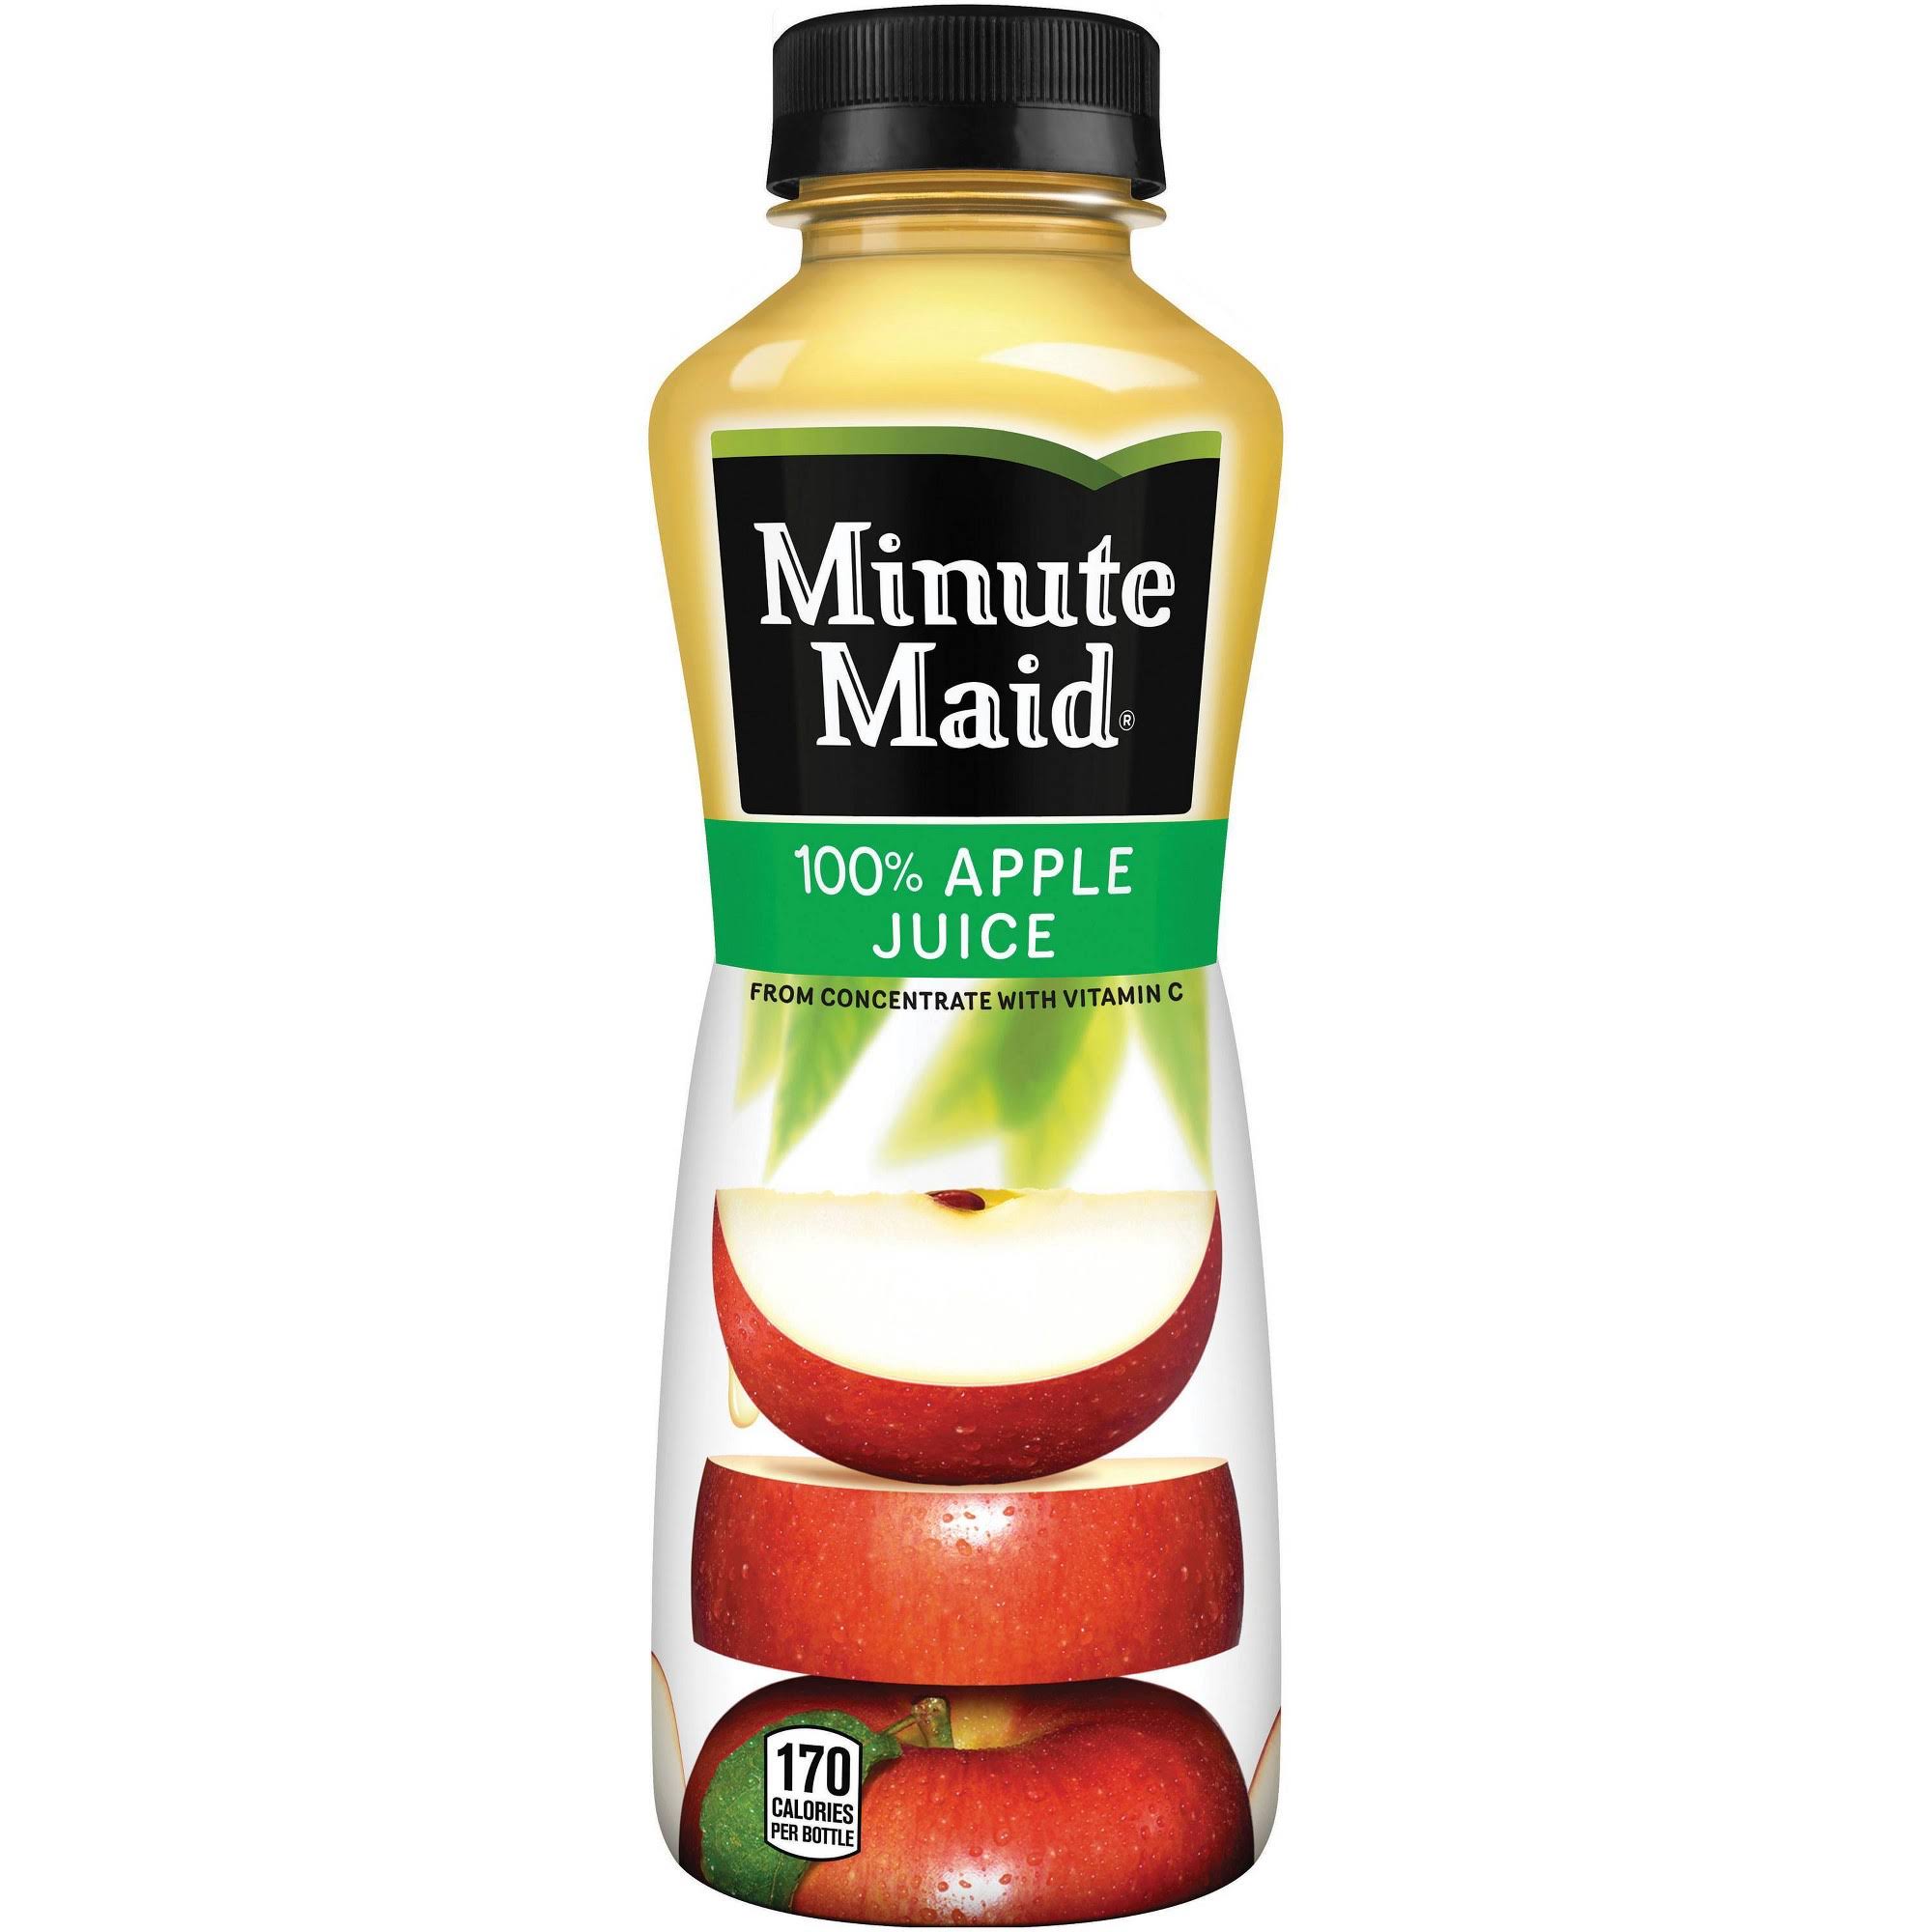 Min Maid Juice-To-Go Apple Juice, 100% Apple Juice with Vitamin C, 12